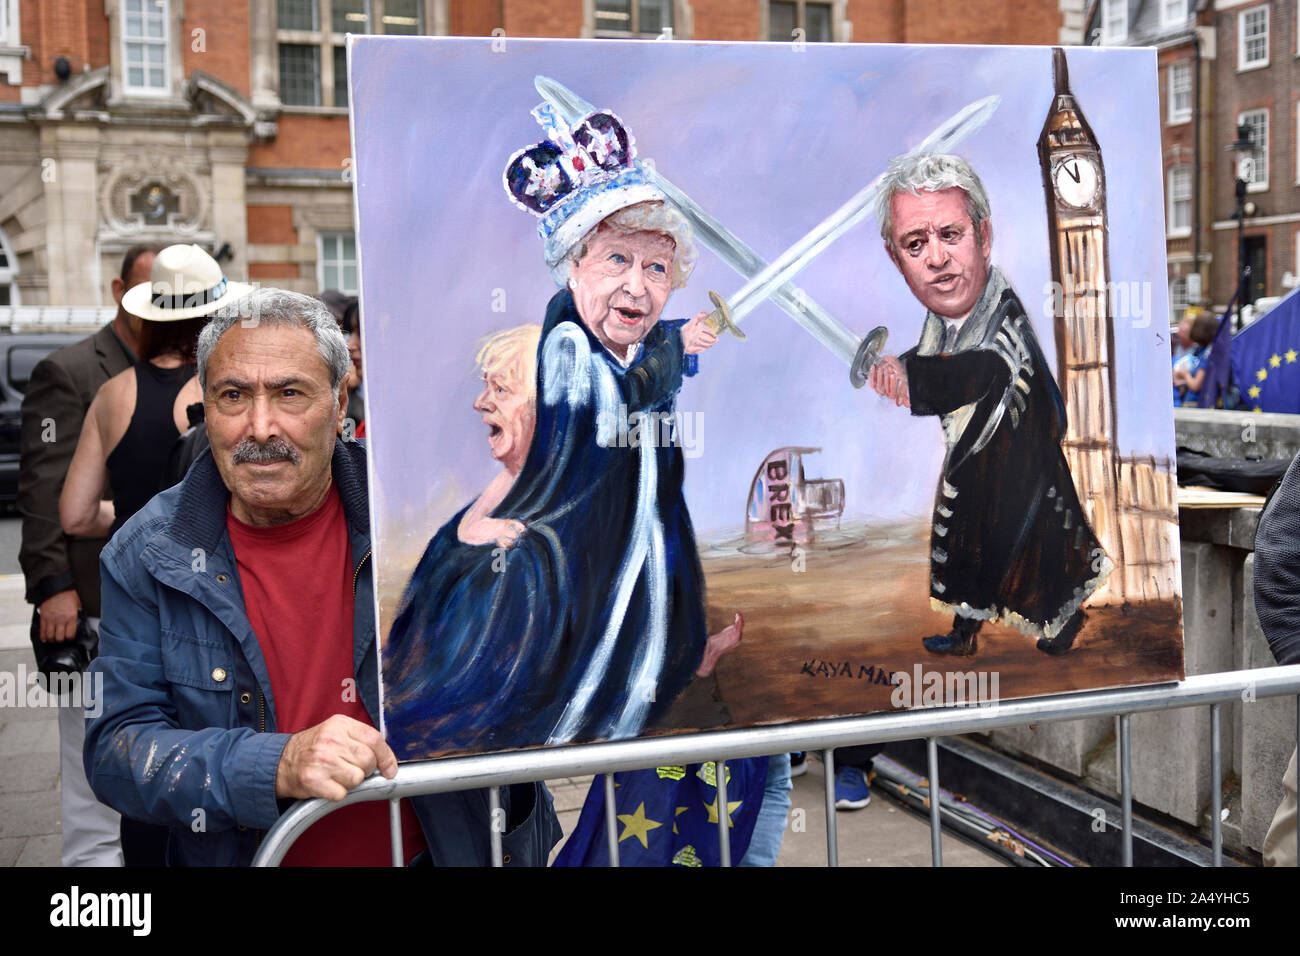 Kaya Mar mit einem seiner politischen Cartoons dipicting die Königin und John Bercow - Sprecher des Unterhauses - in Konflikt, auf College Green, Wes Stockfoto